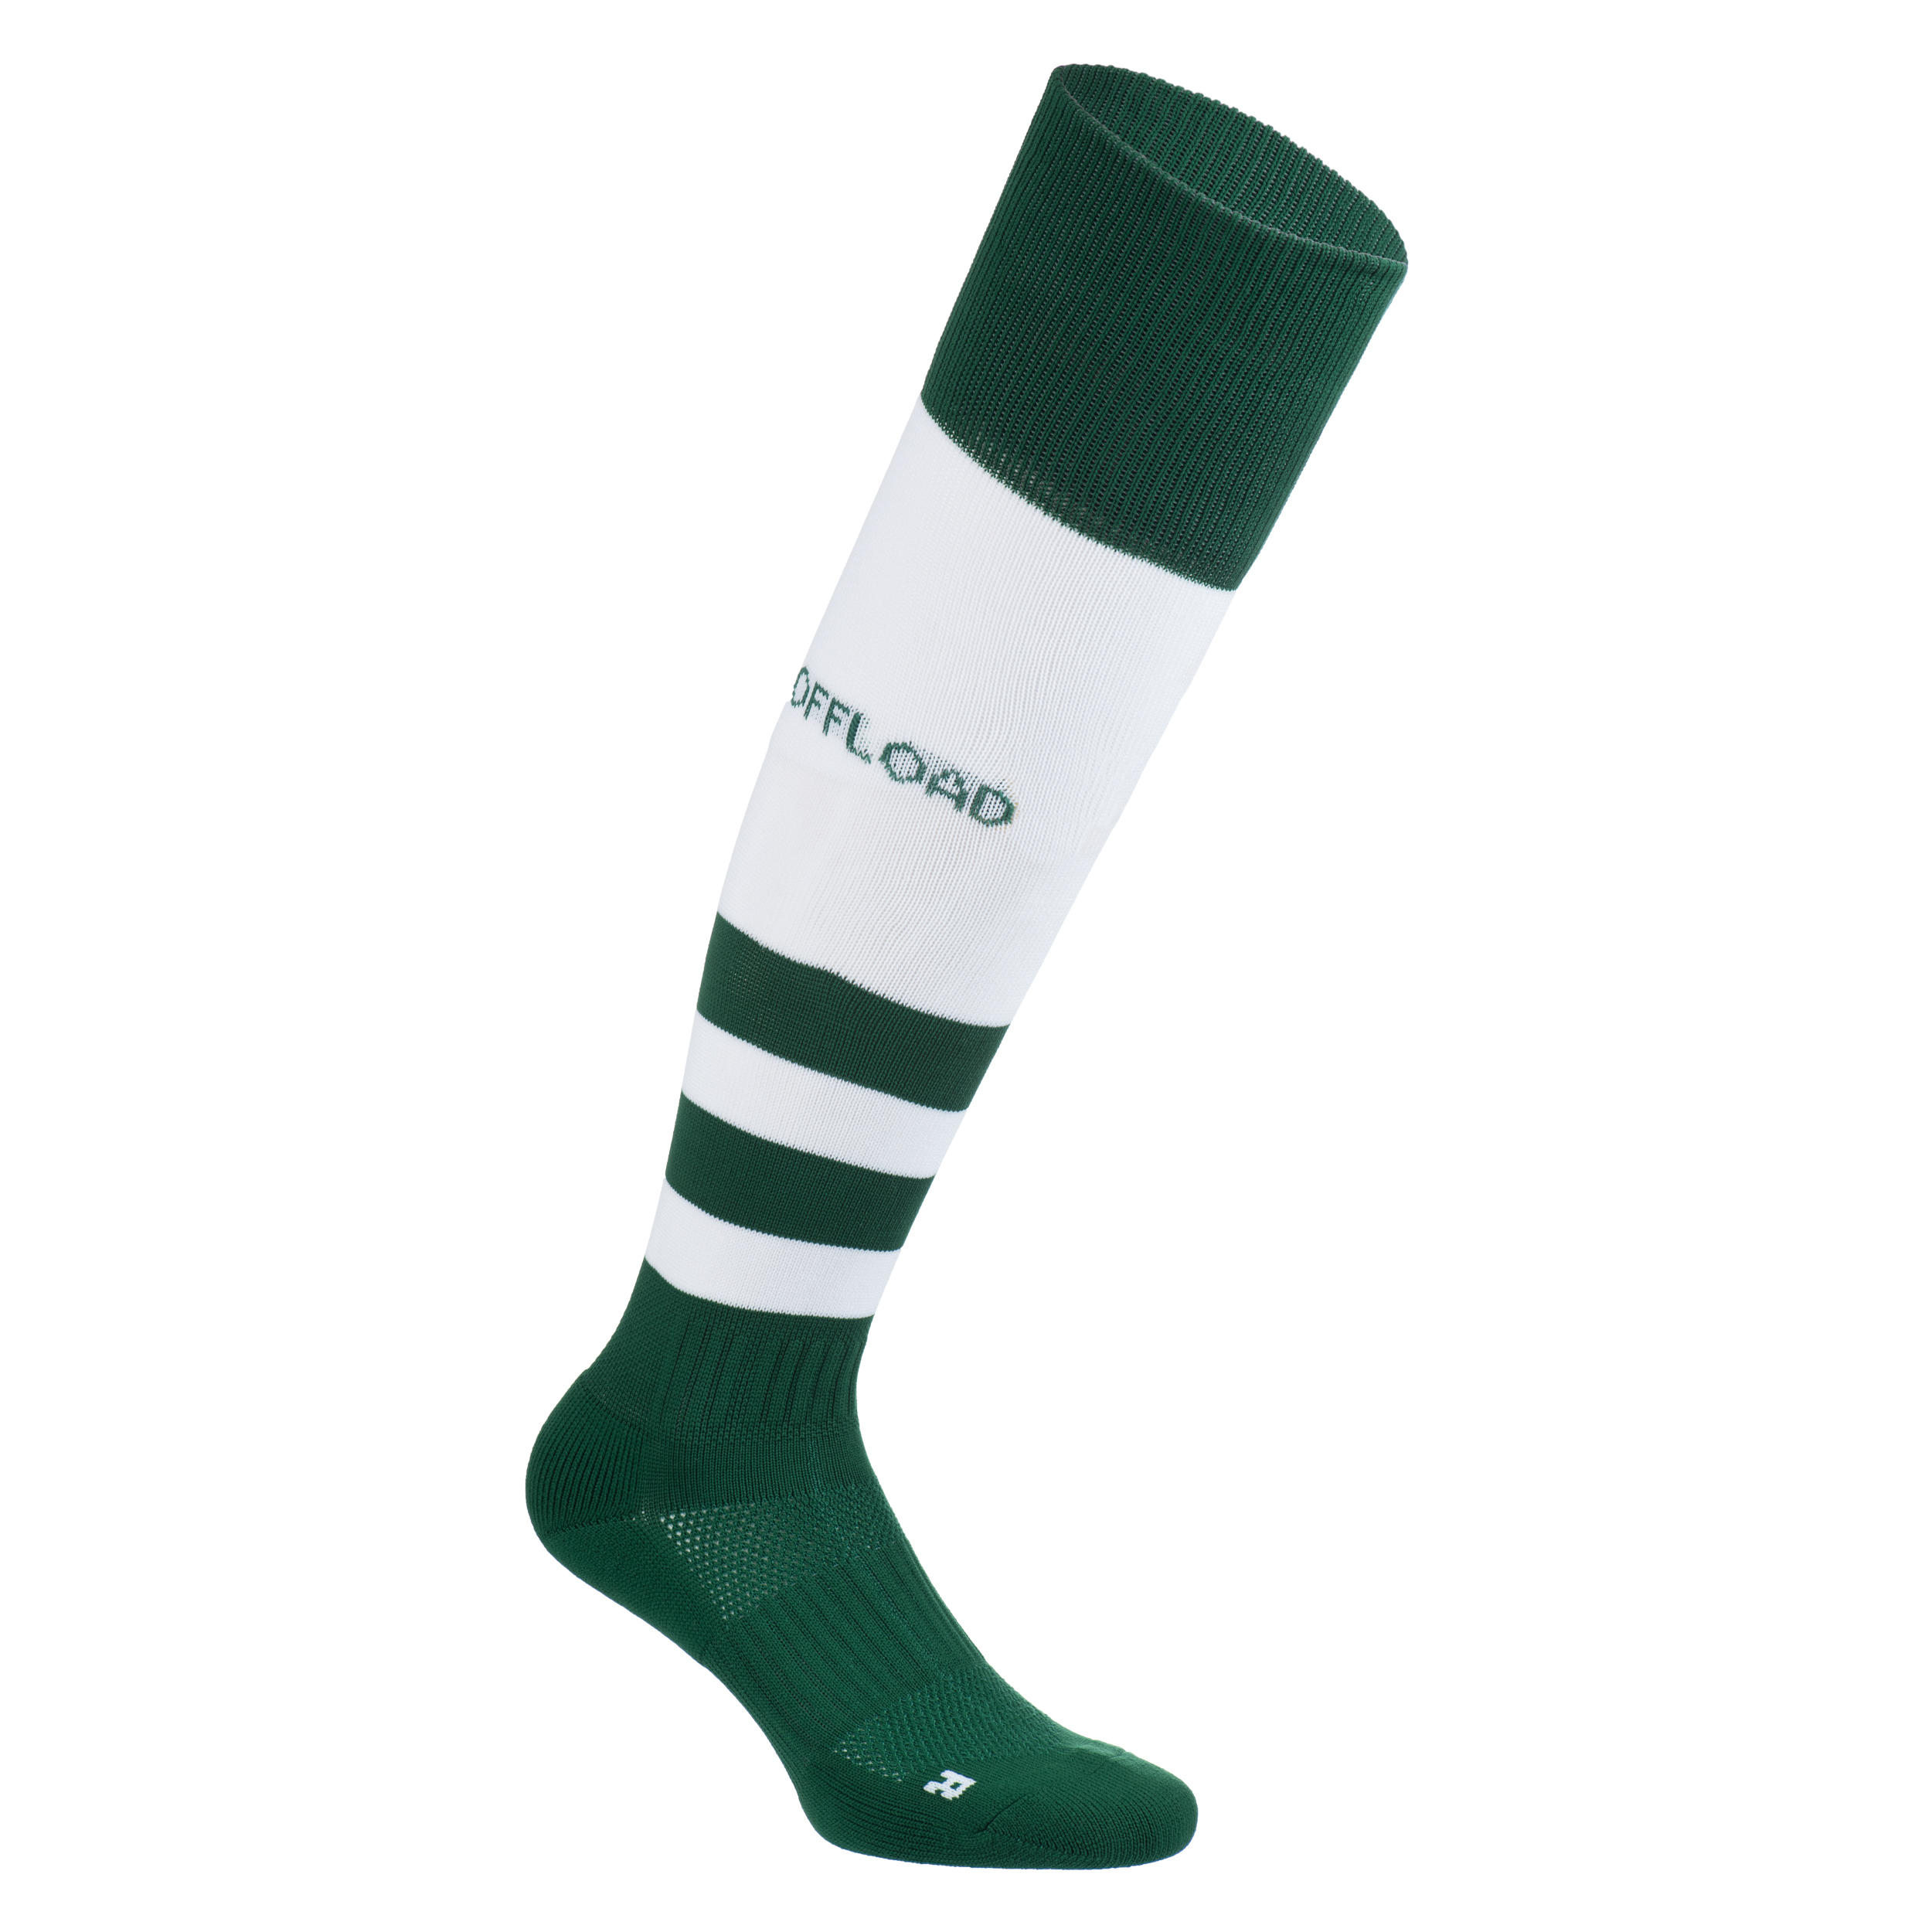 Men's/Women's High Rugby Socks R500 - Green/White 1/5